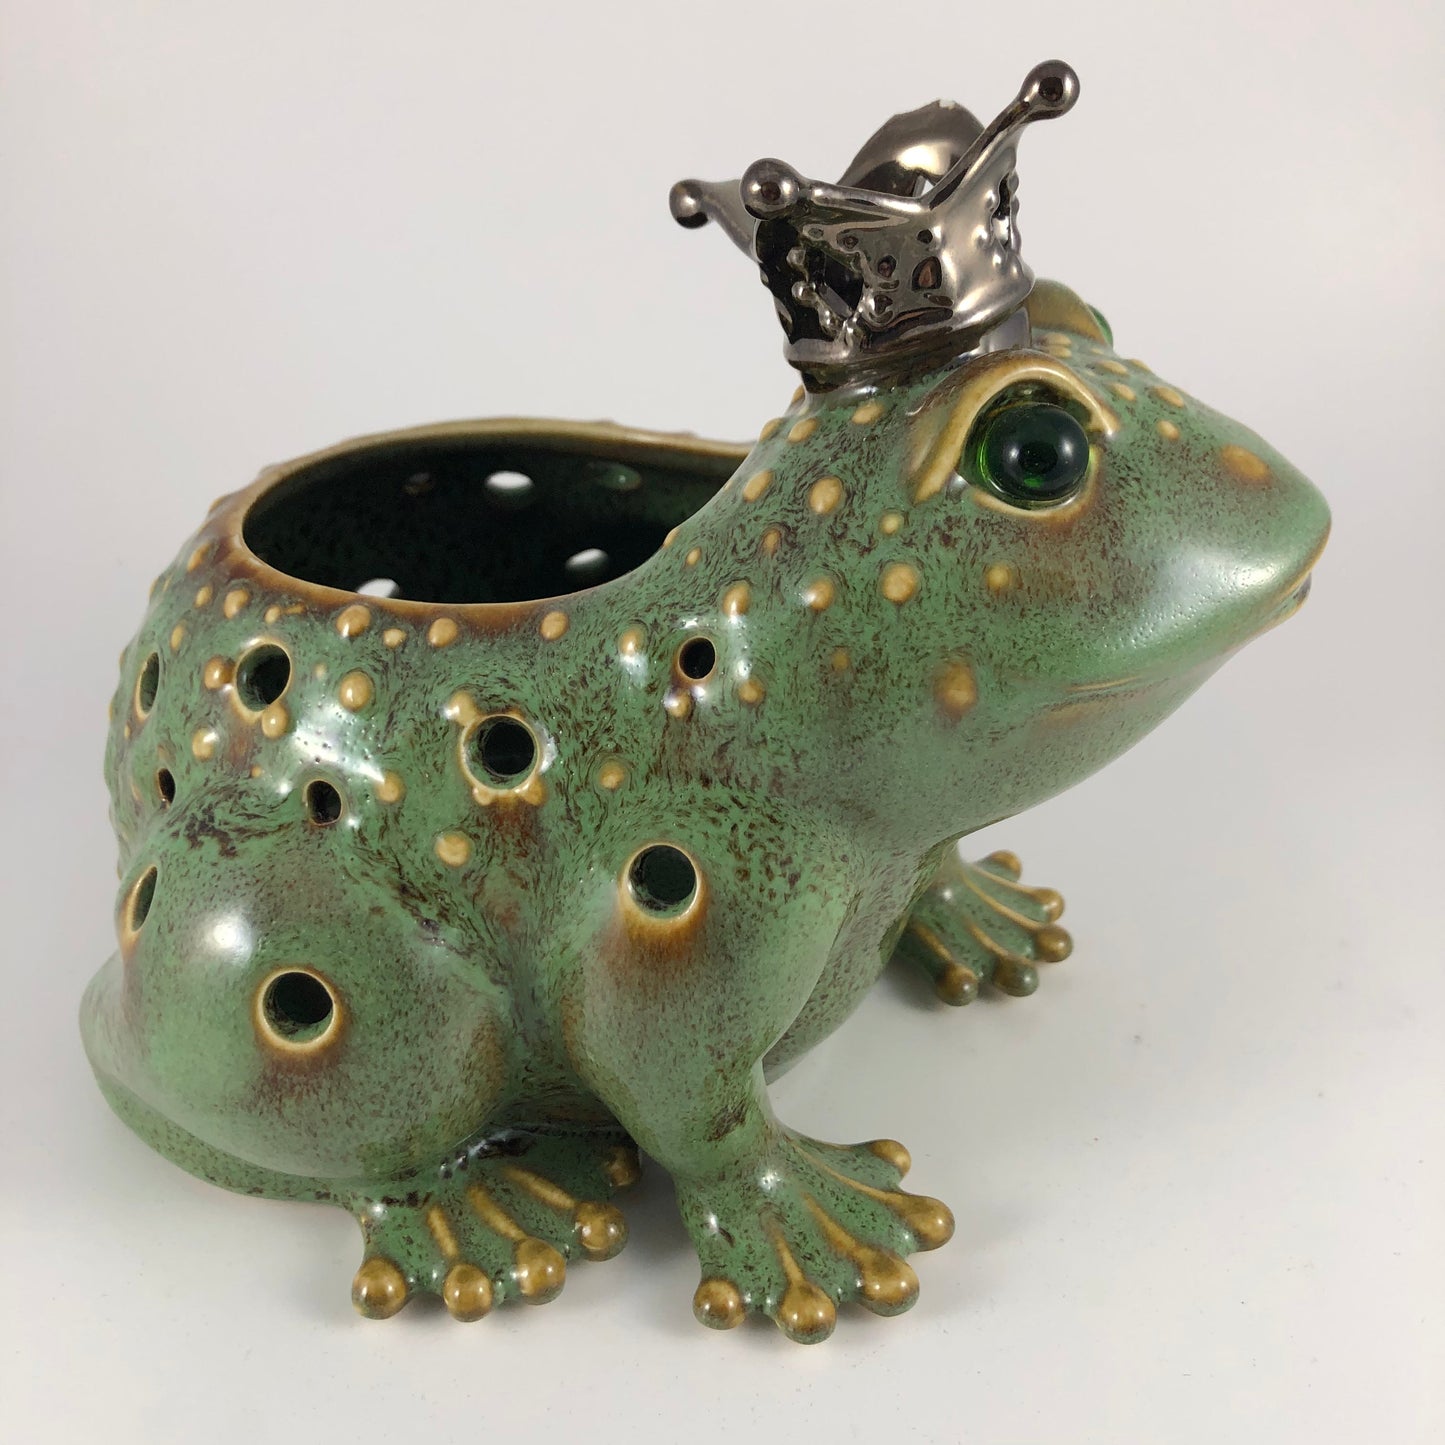 P9742 - The Frog Prince